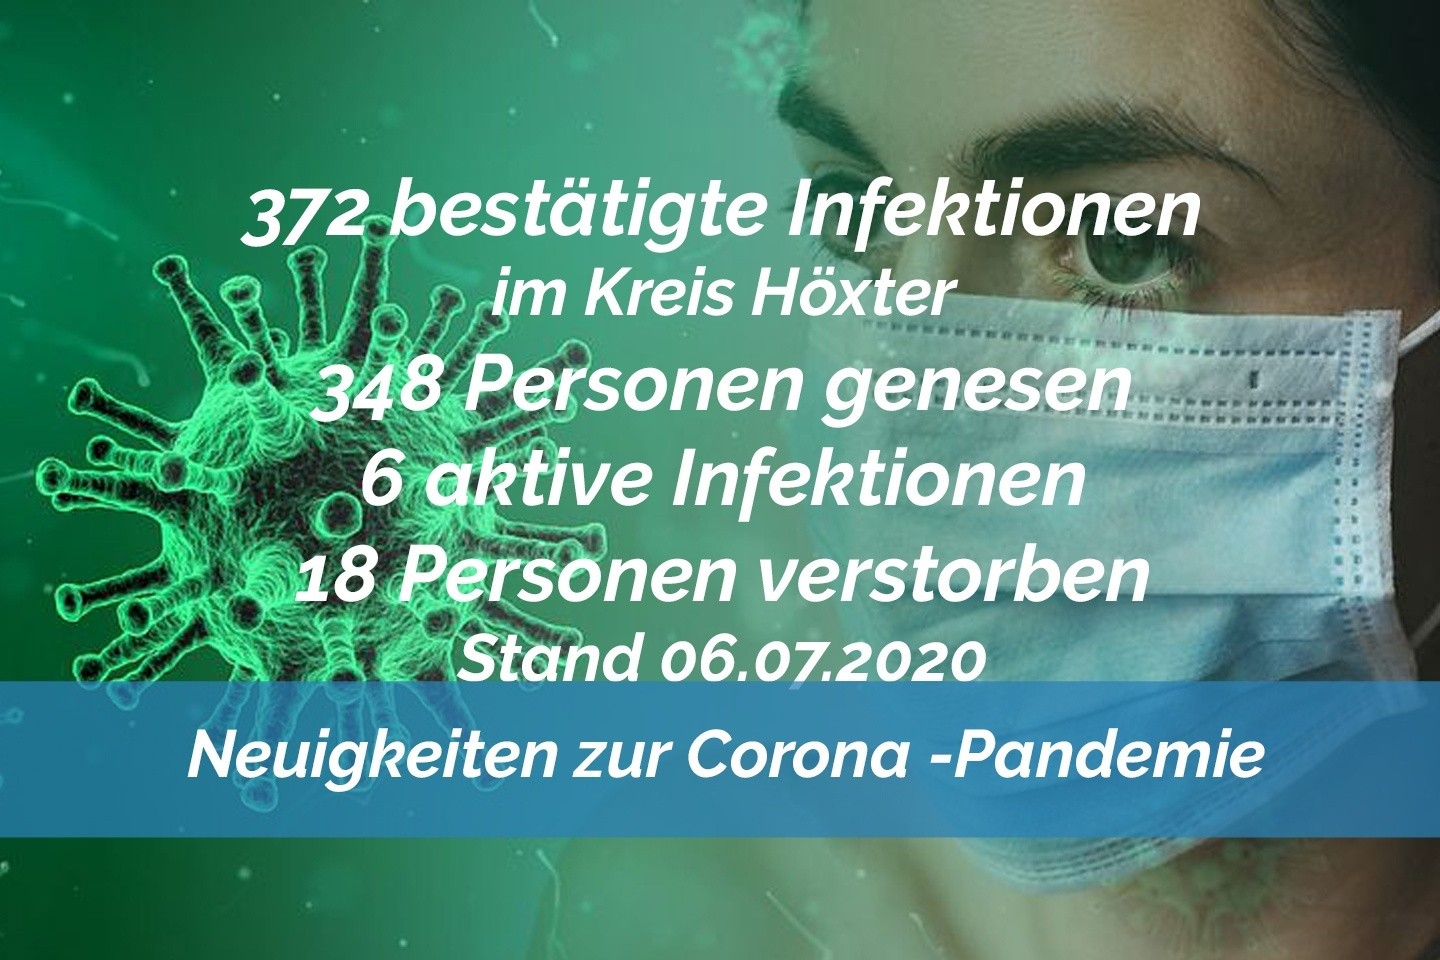 Update vom 06. Juli: 372 bestätigte Infektionen mit dem neuen Coronavirus im Kreis Höxter